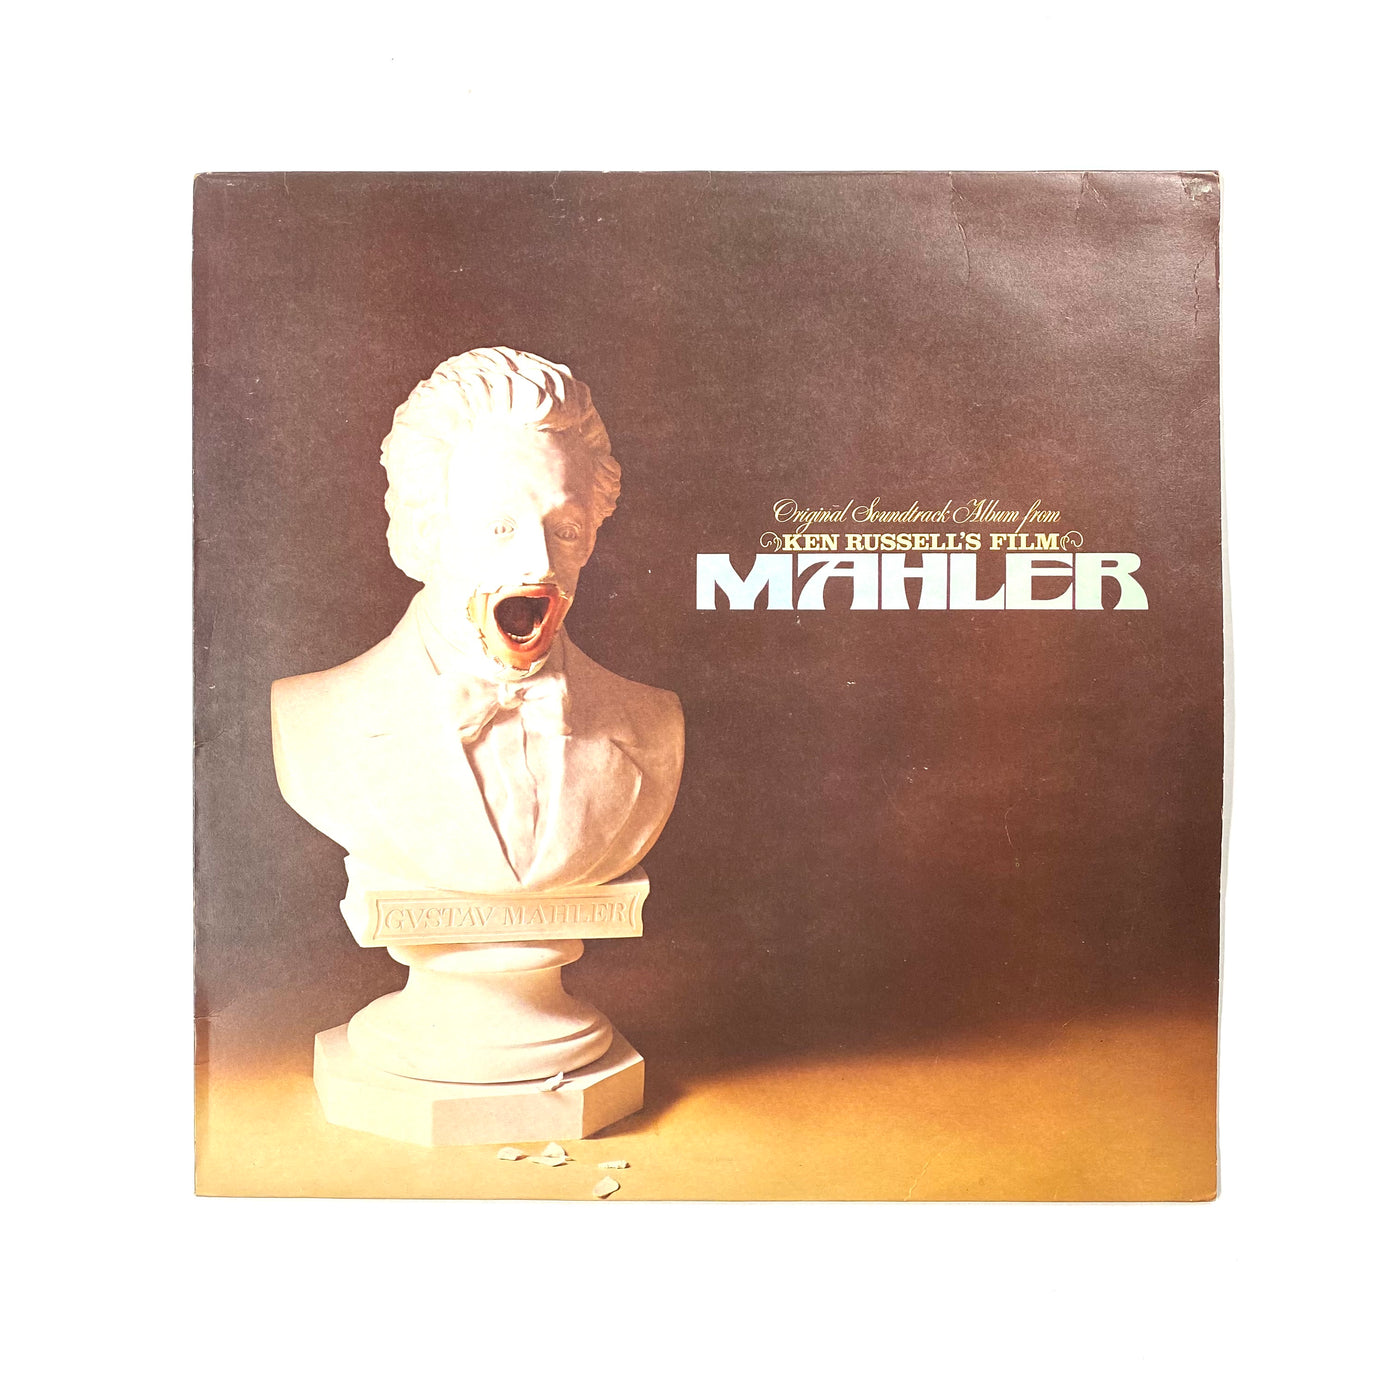 Gustav Mahler, Concertgebouworkest, Bernard Haitink - Original Soundtrack Album From Ken Russell's Film Mahler